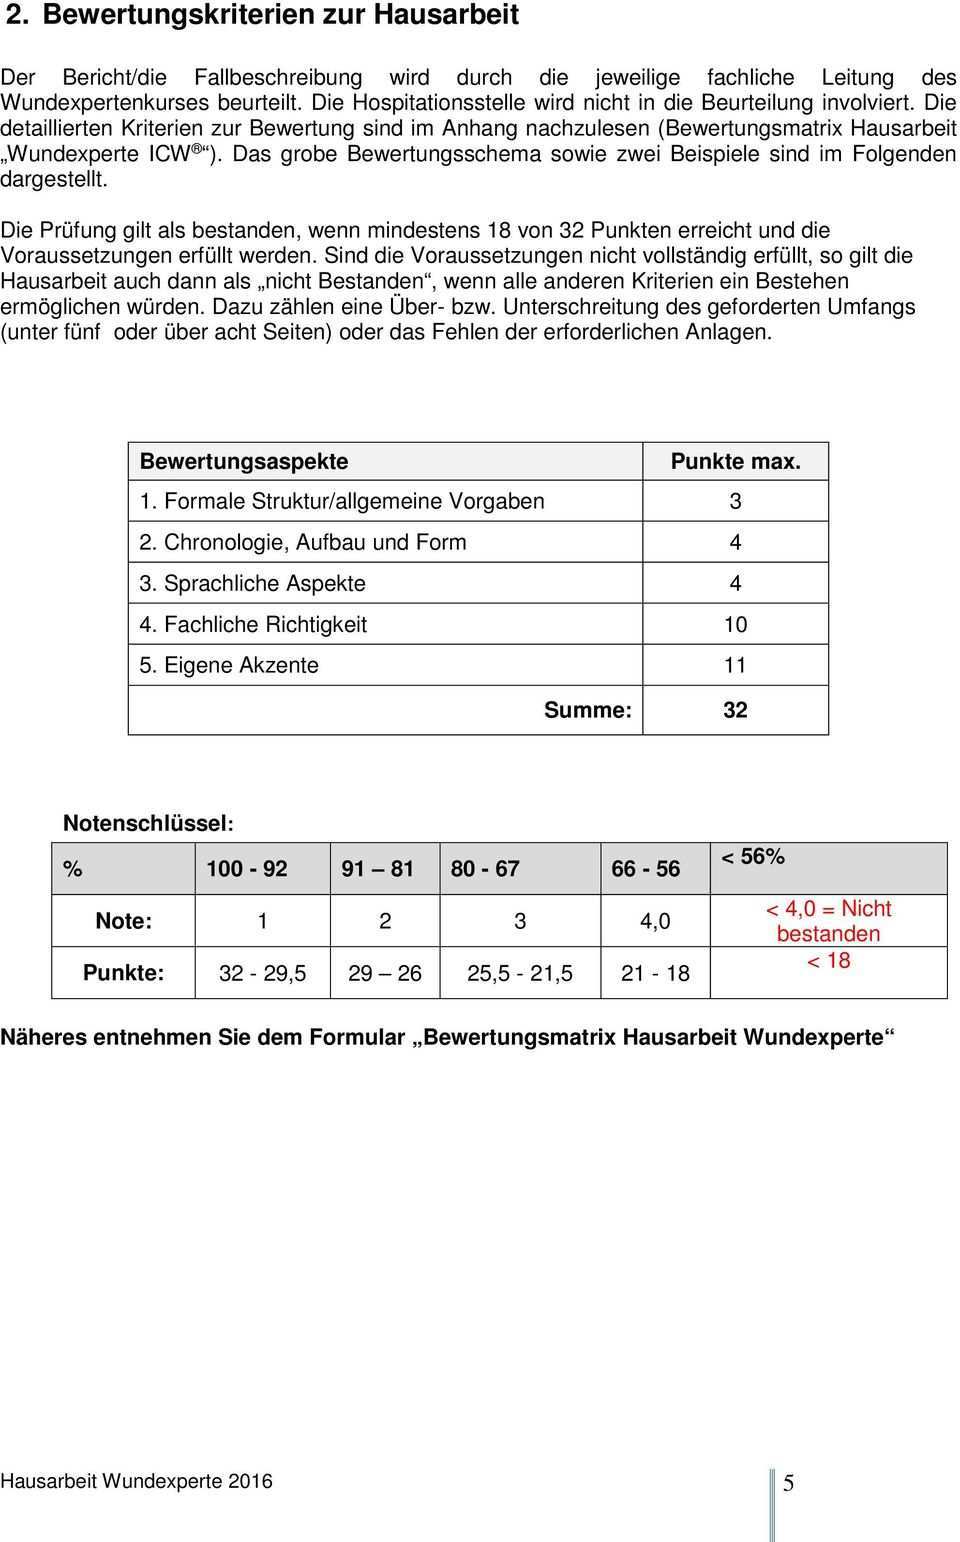 Deckblatt Hausarbeit Wundexperte Icw Pdf Kostenfreier Download